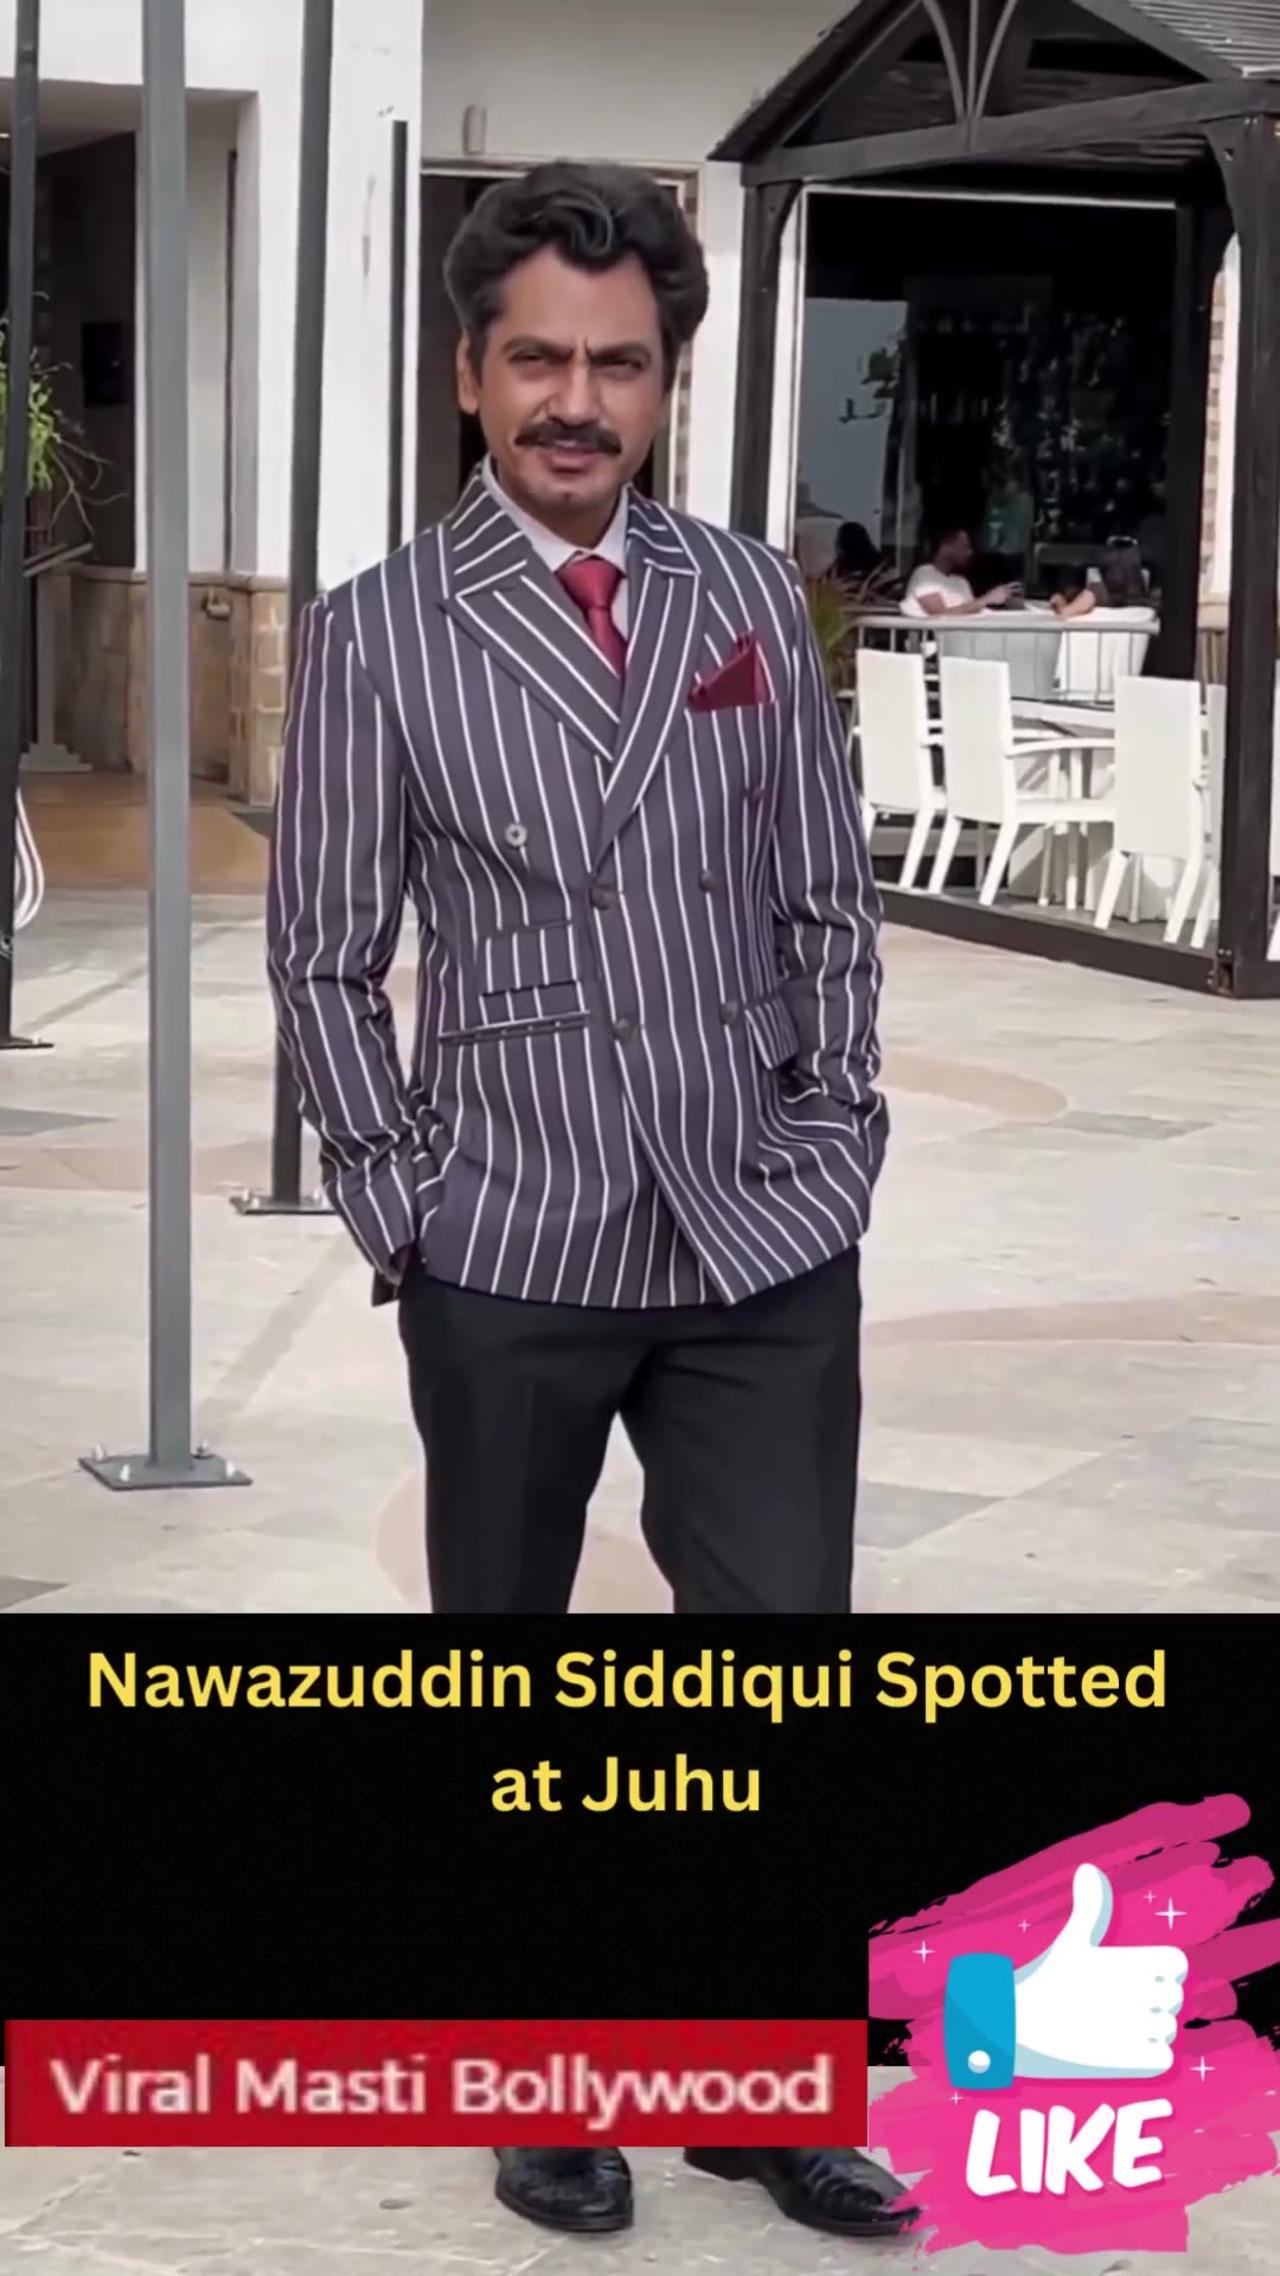 Nawazuddin Siddiqui Spotted at Juhu #nawazuddinsiddiqui